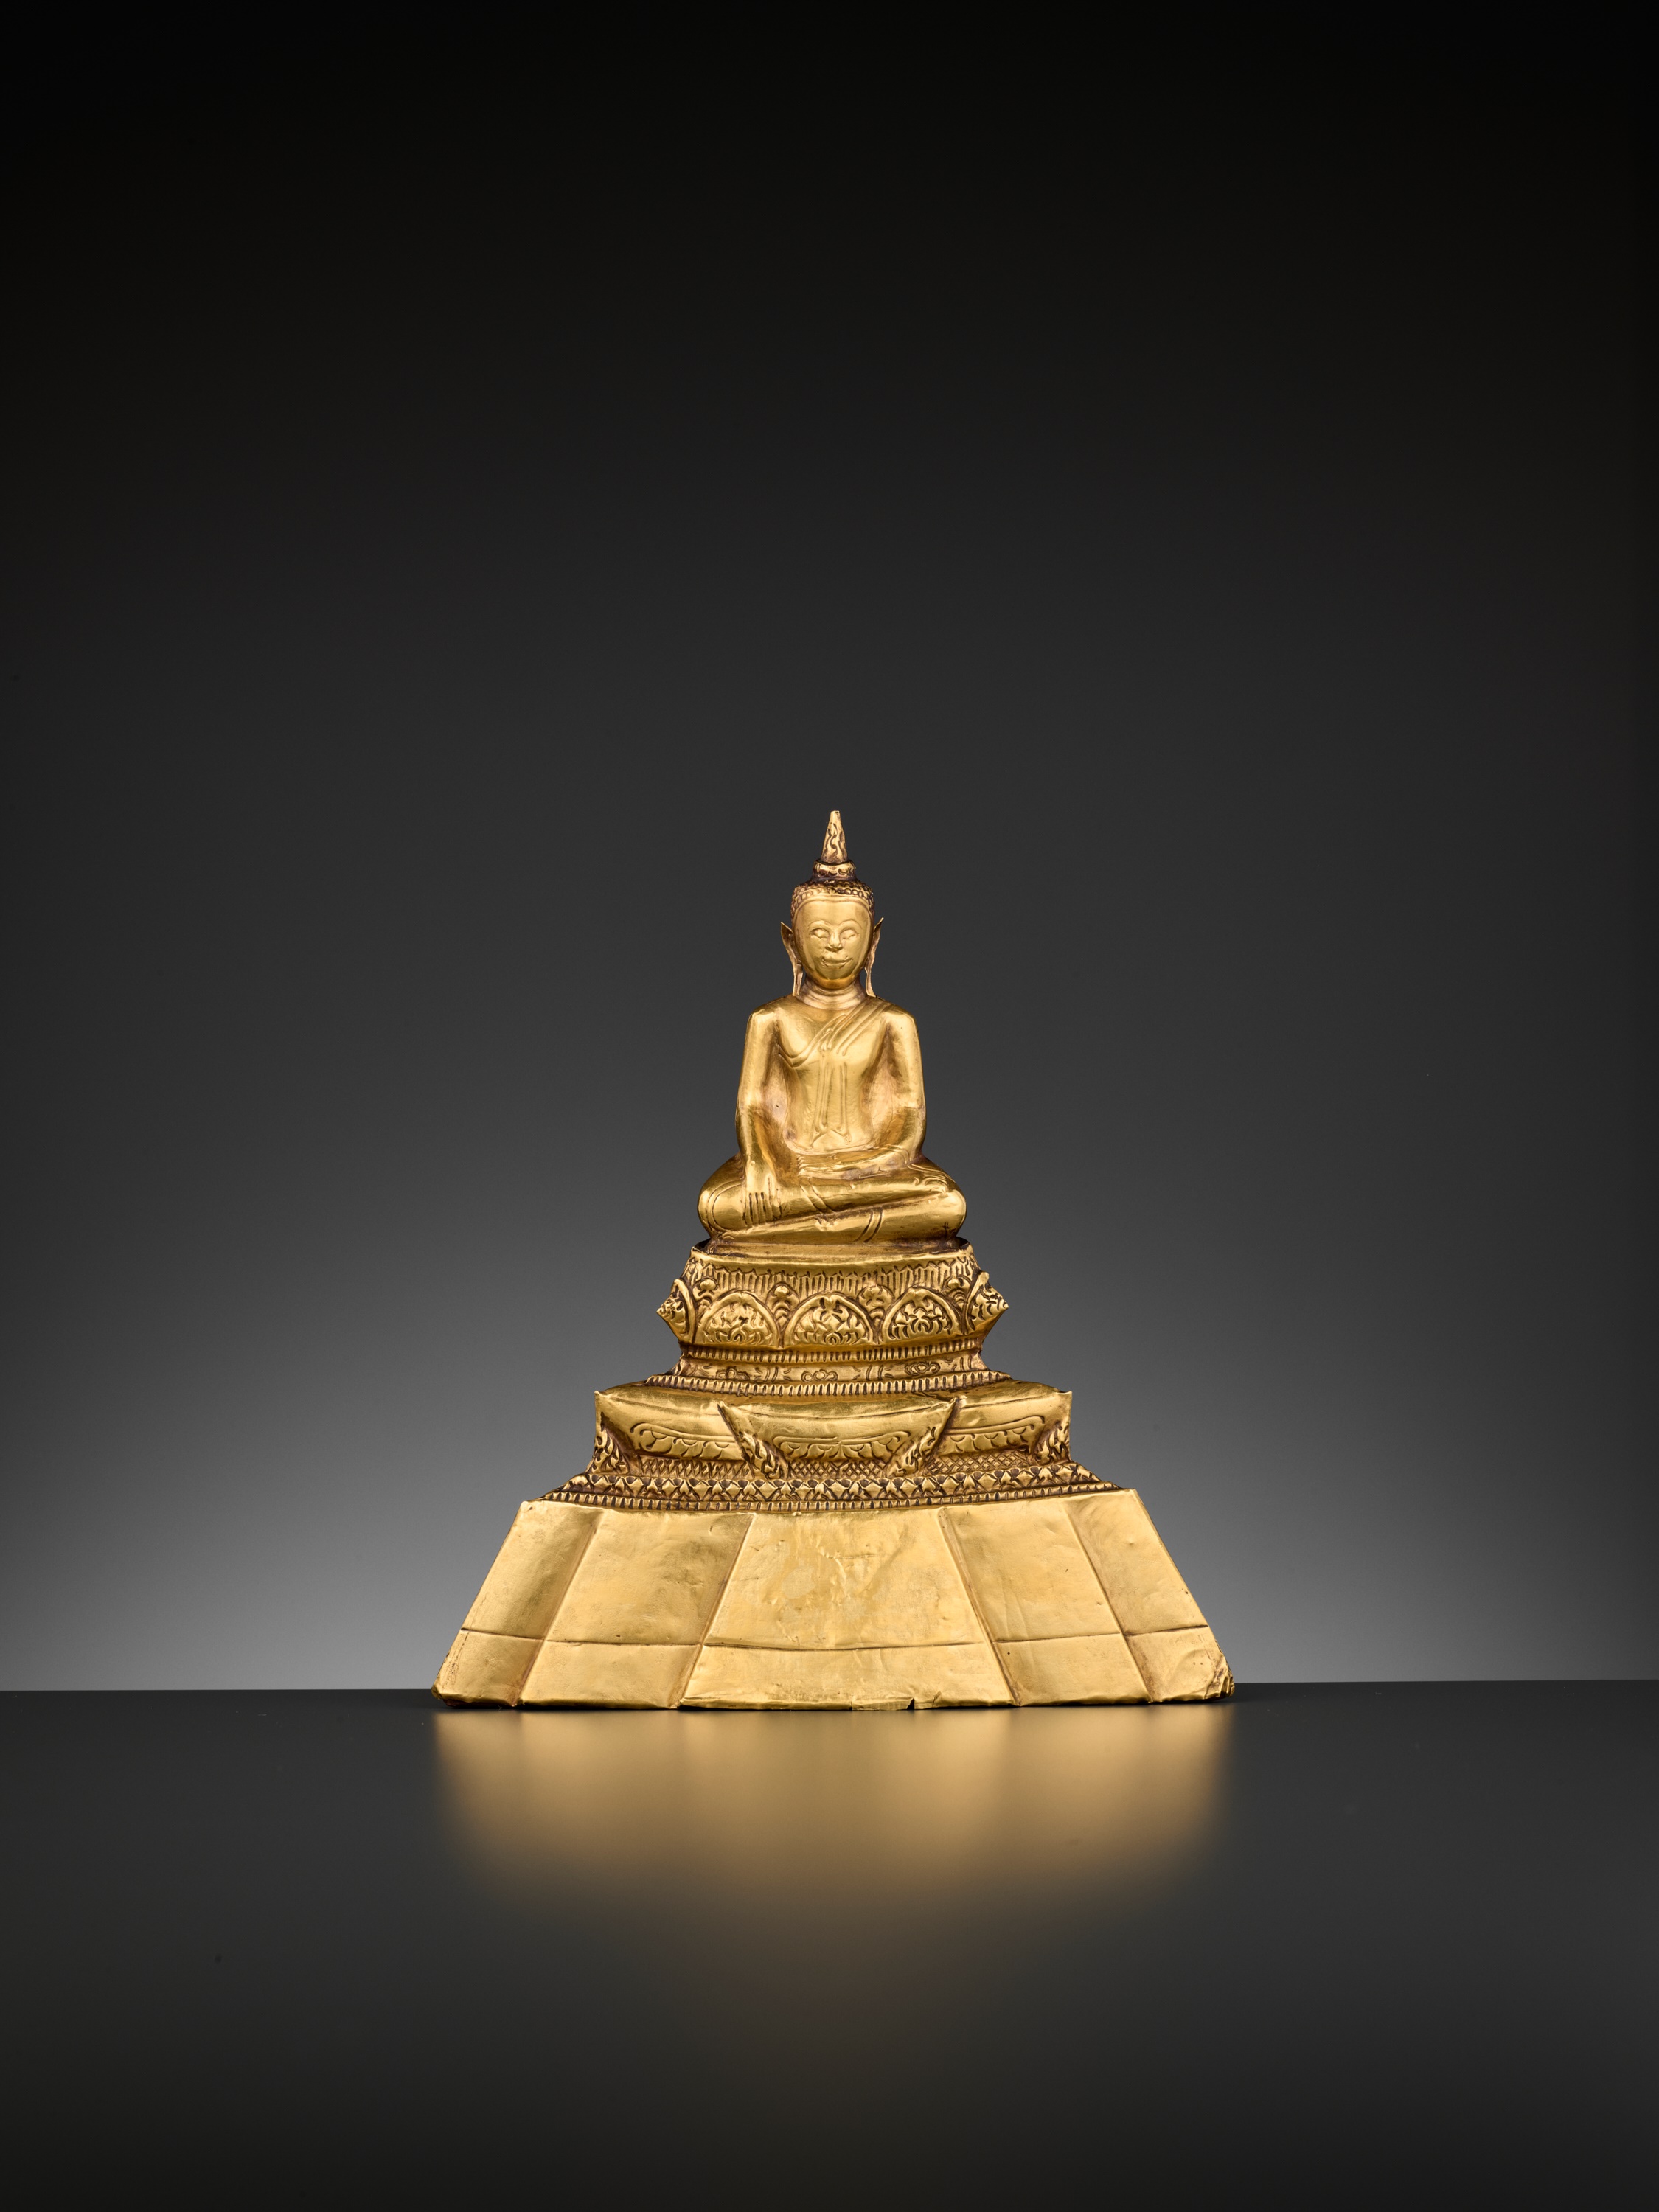 A 24-CARAT GOLD REPOUSSE FIGURE OF BUDDHA SHAKYAMUNI, AYUTTHAYA STYLE - Image 2 of 11